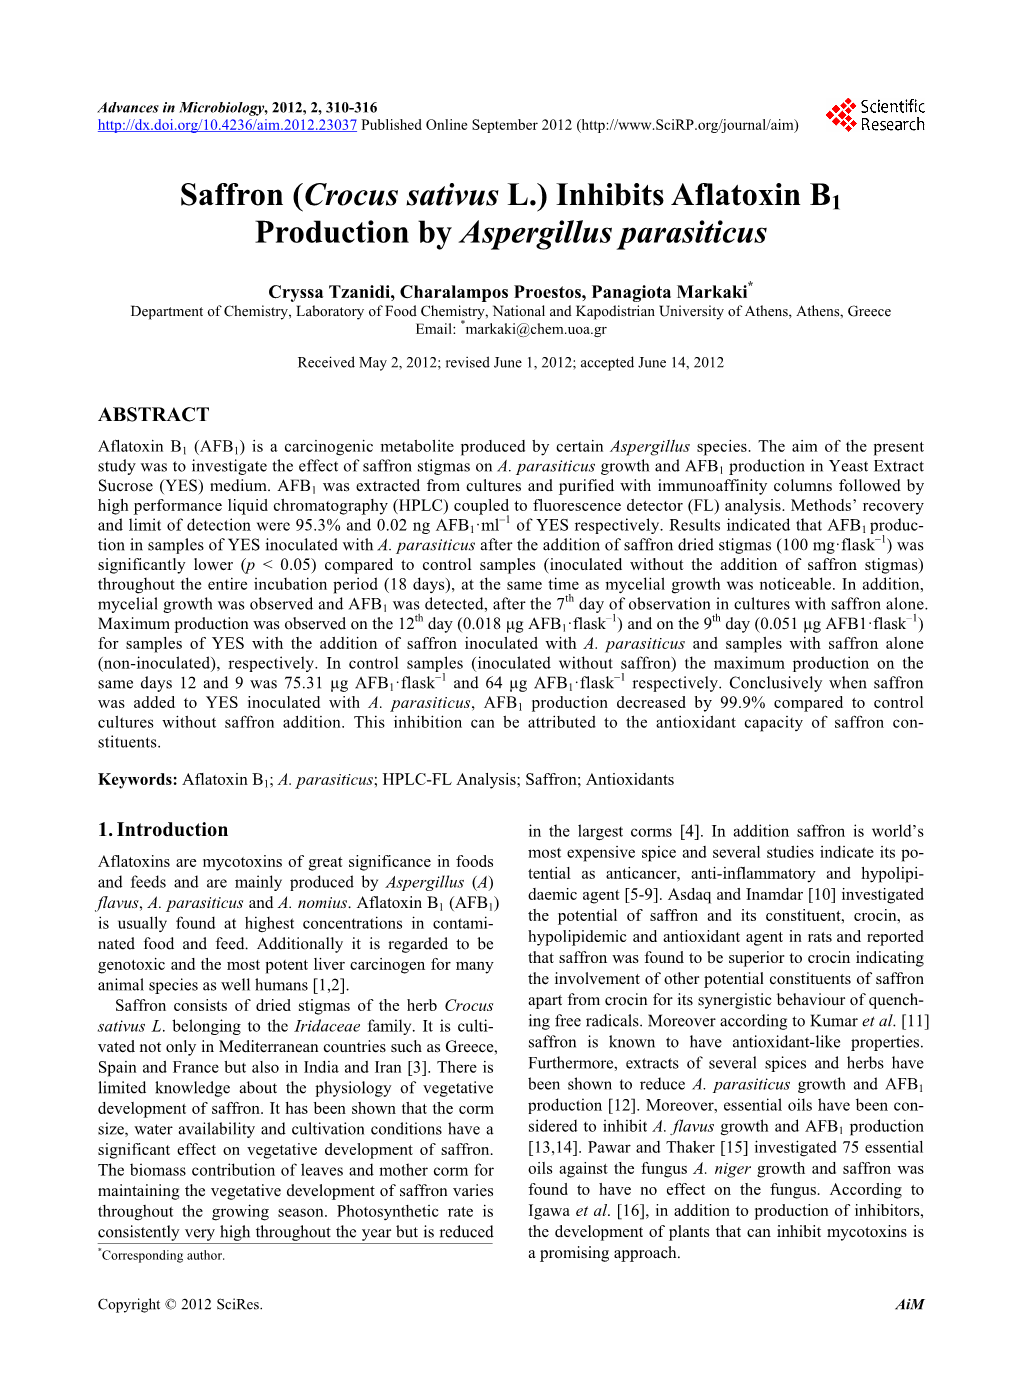 Saffron (Crocus Sativus L.) Inhibits Aflatoxin B1 Production by Aspergillus Parasiticus